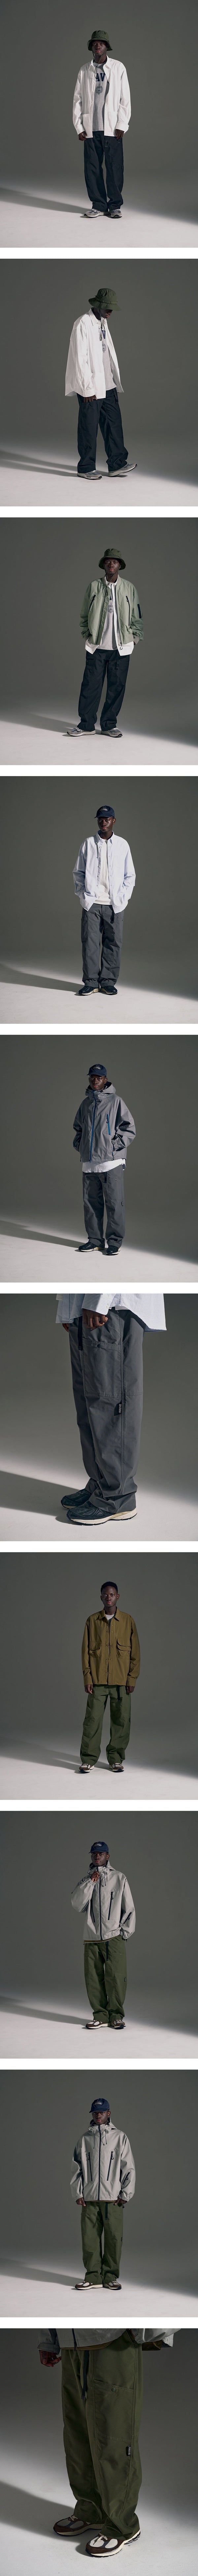 Six Strap Pants - Grey